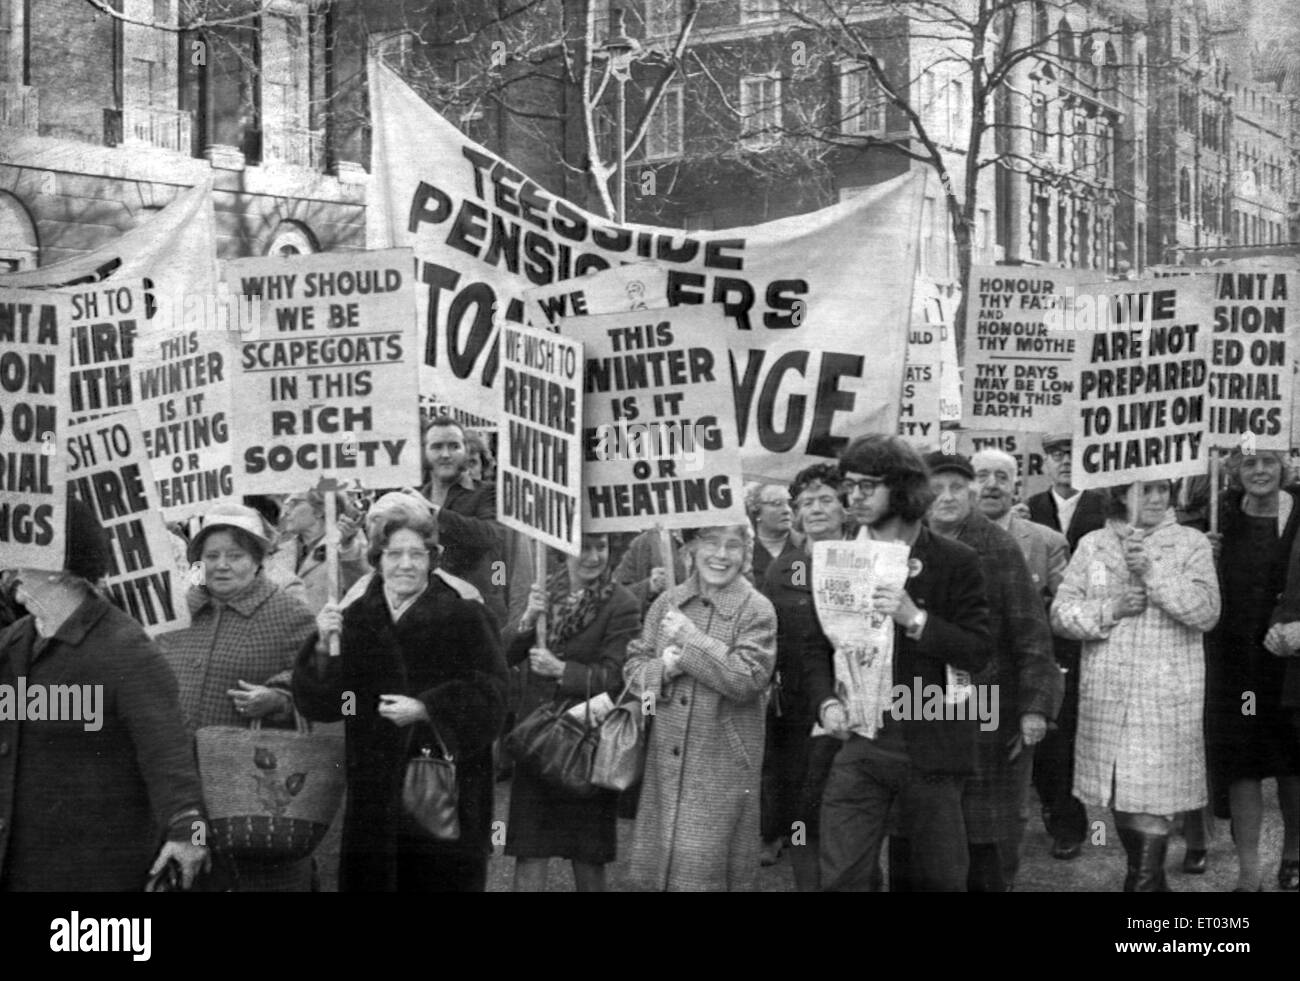 Les retraités de Teesside de protestation contre la hausse des prix, Newcastle, 24 février 1974. Slogans, pourquoi devrions-nous être les boucs émissaires dans cette société riche. Cet hiver EST-IL MANGER OU DE CHAUFFAGE. Nous ne sommes pas prêts à vivre de charité. Banque D'Images